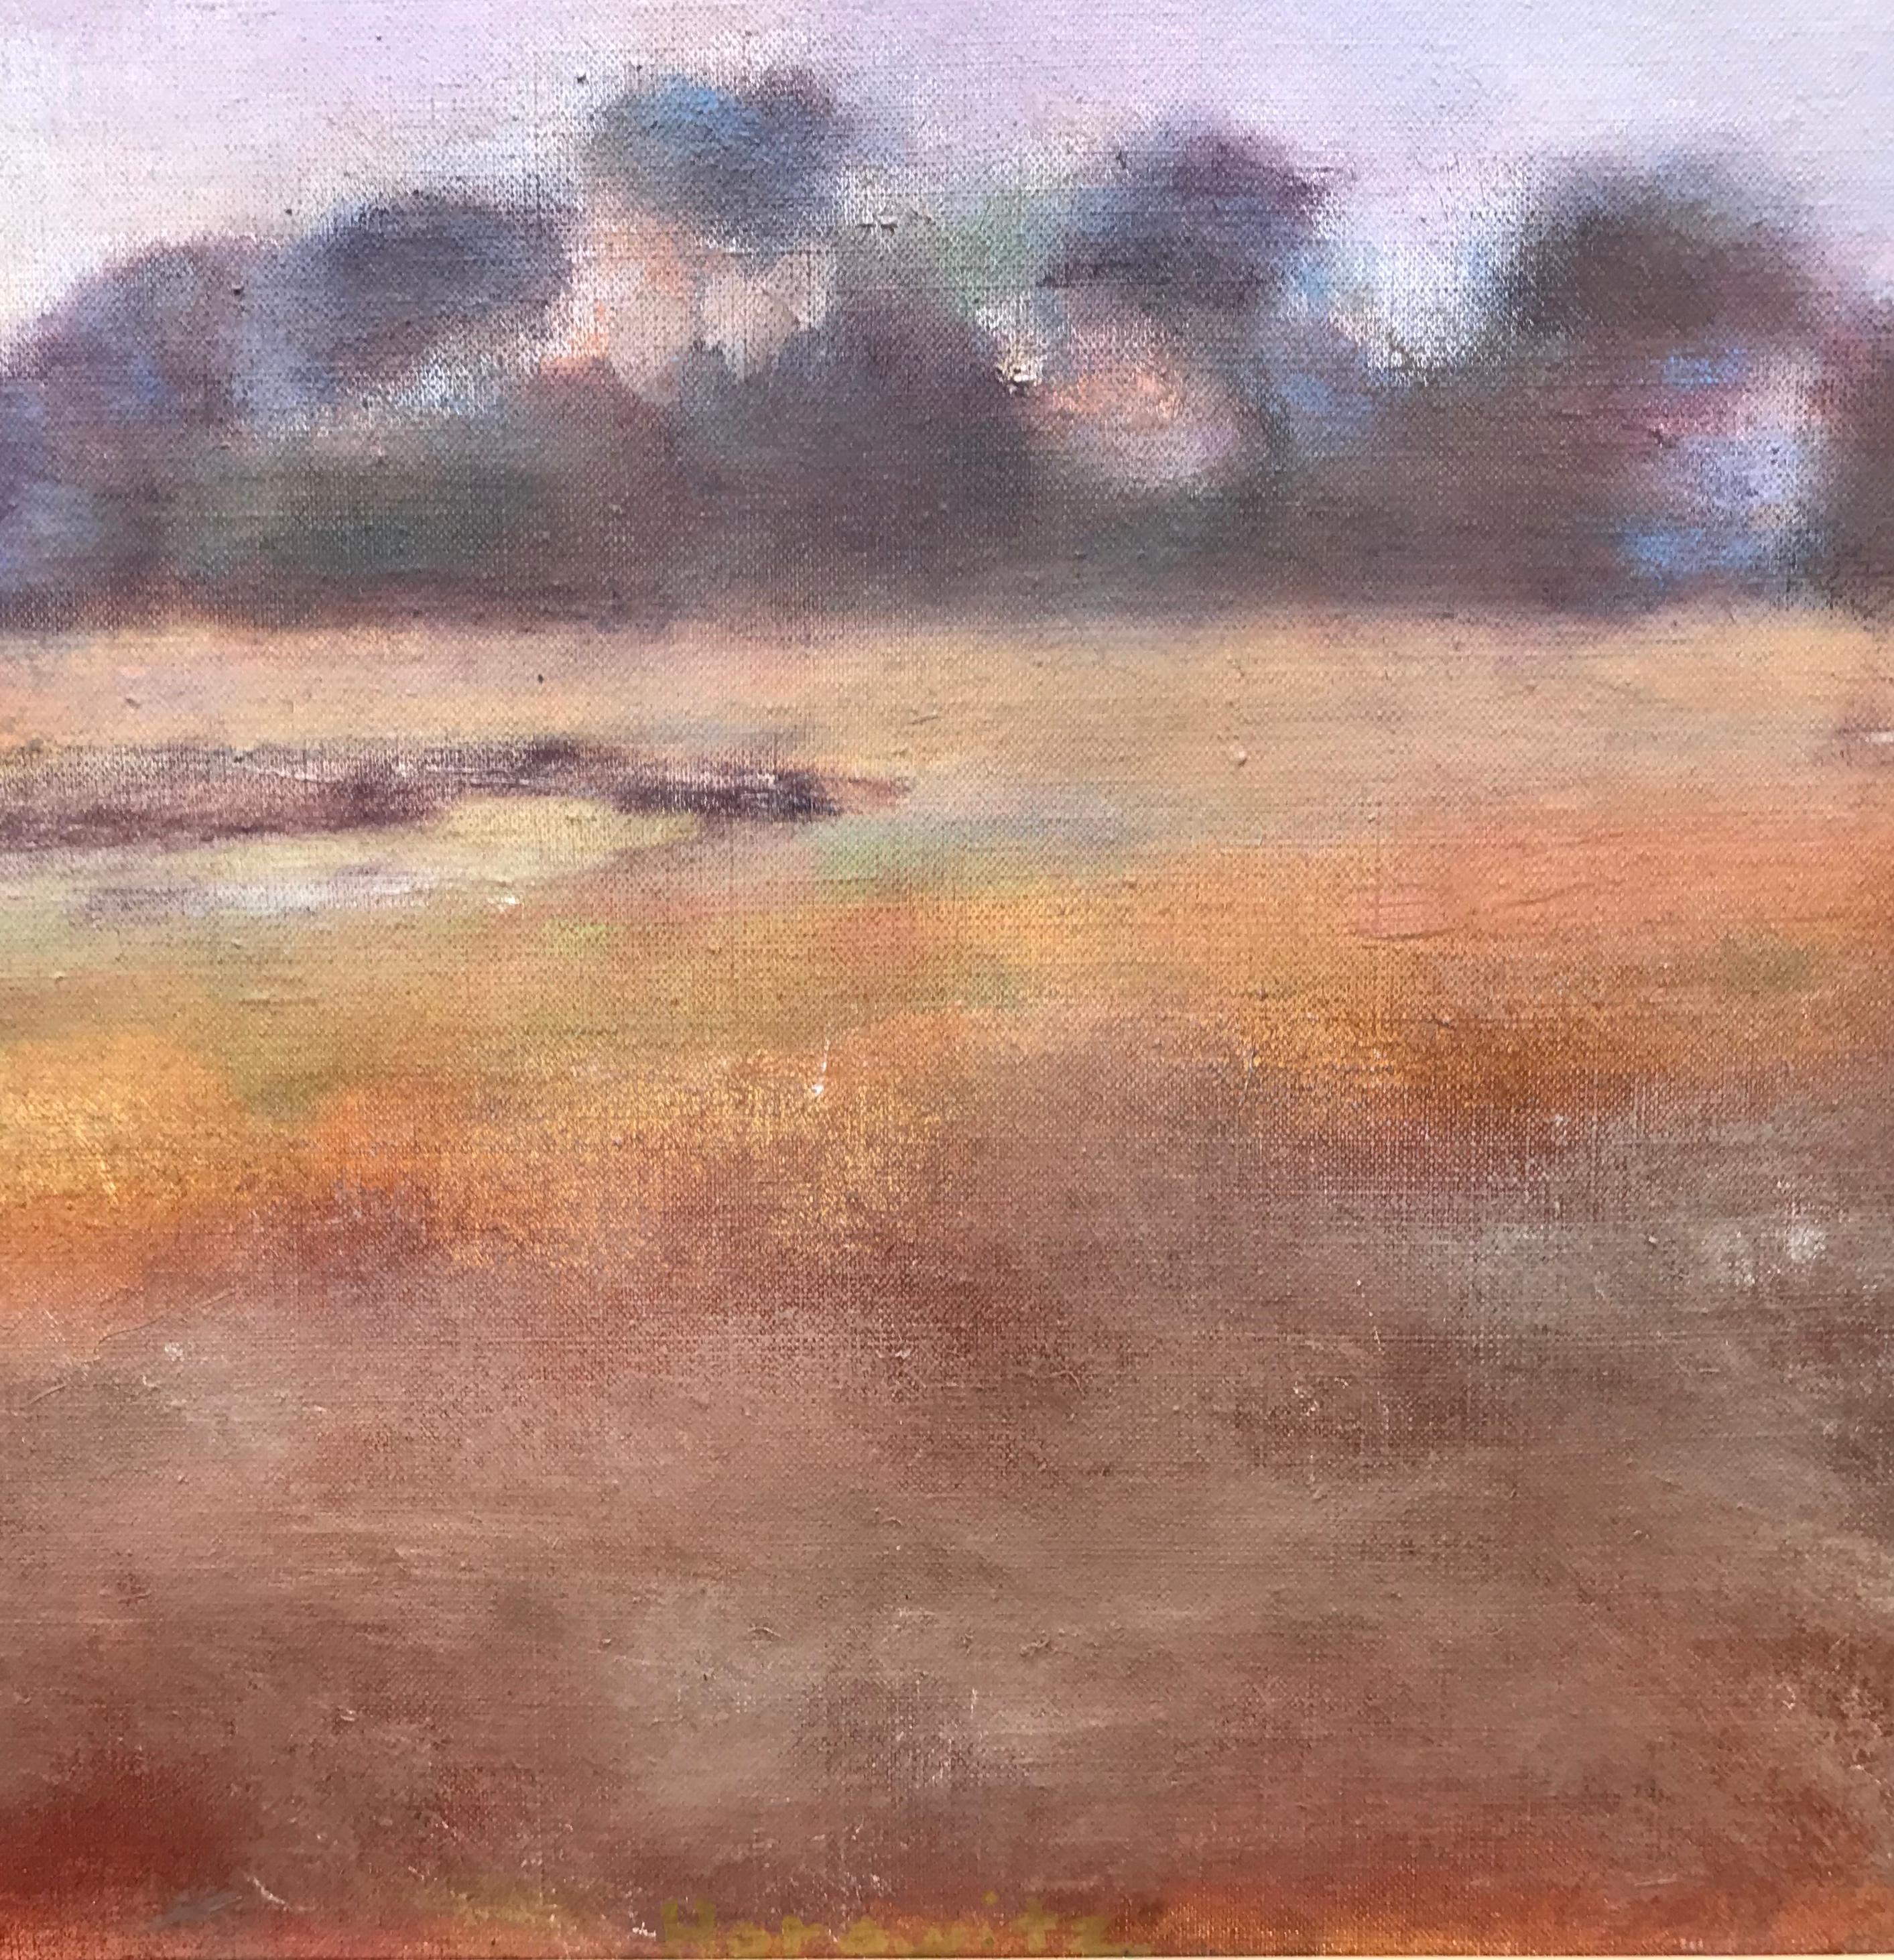 Regnerischer Sumpf – Painting von Larry Horowitz